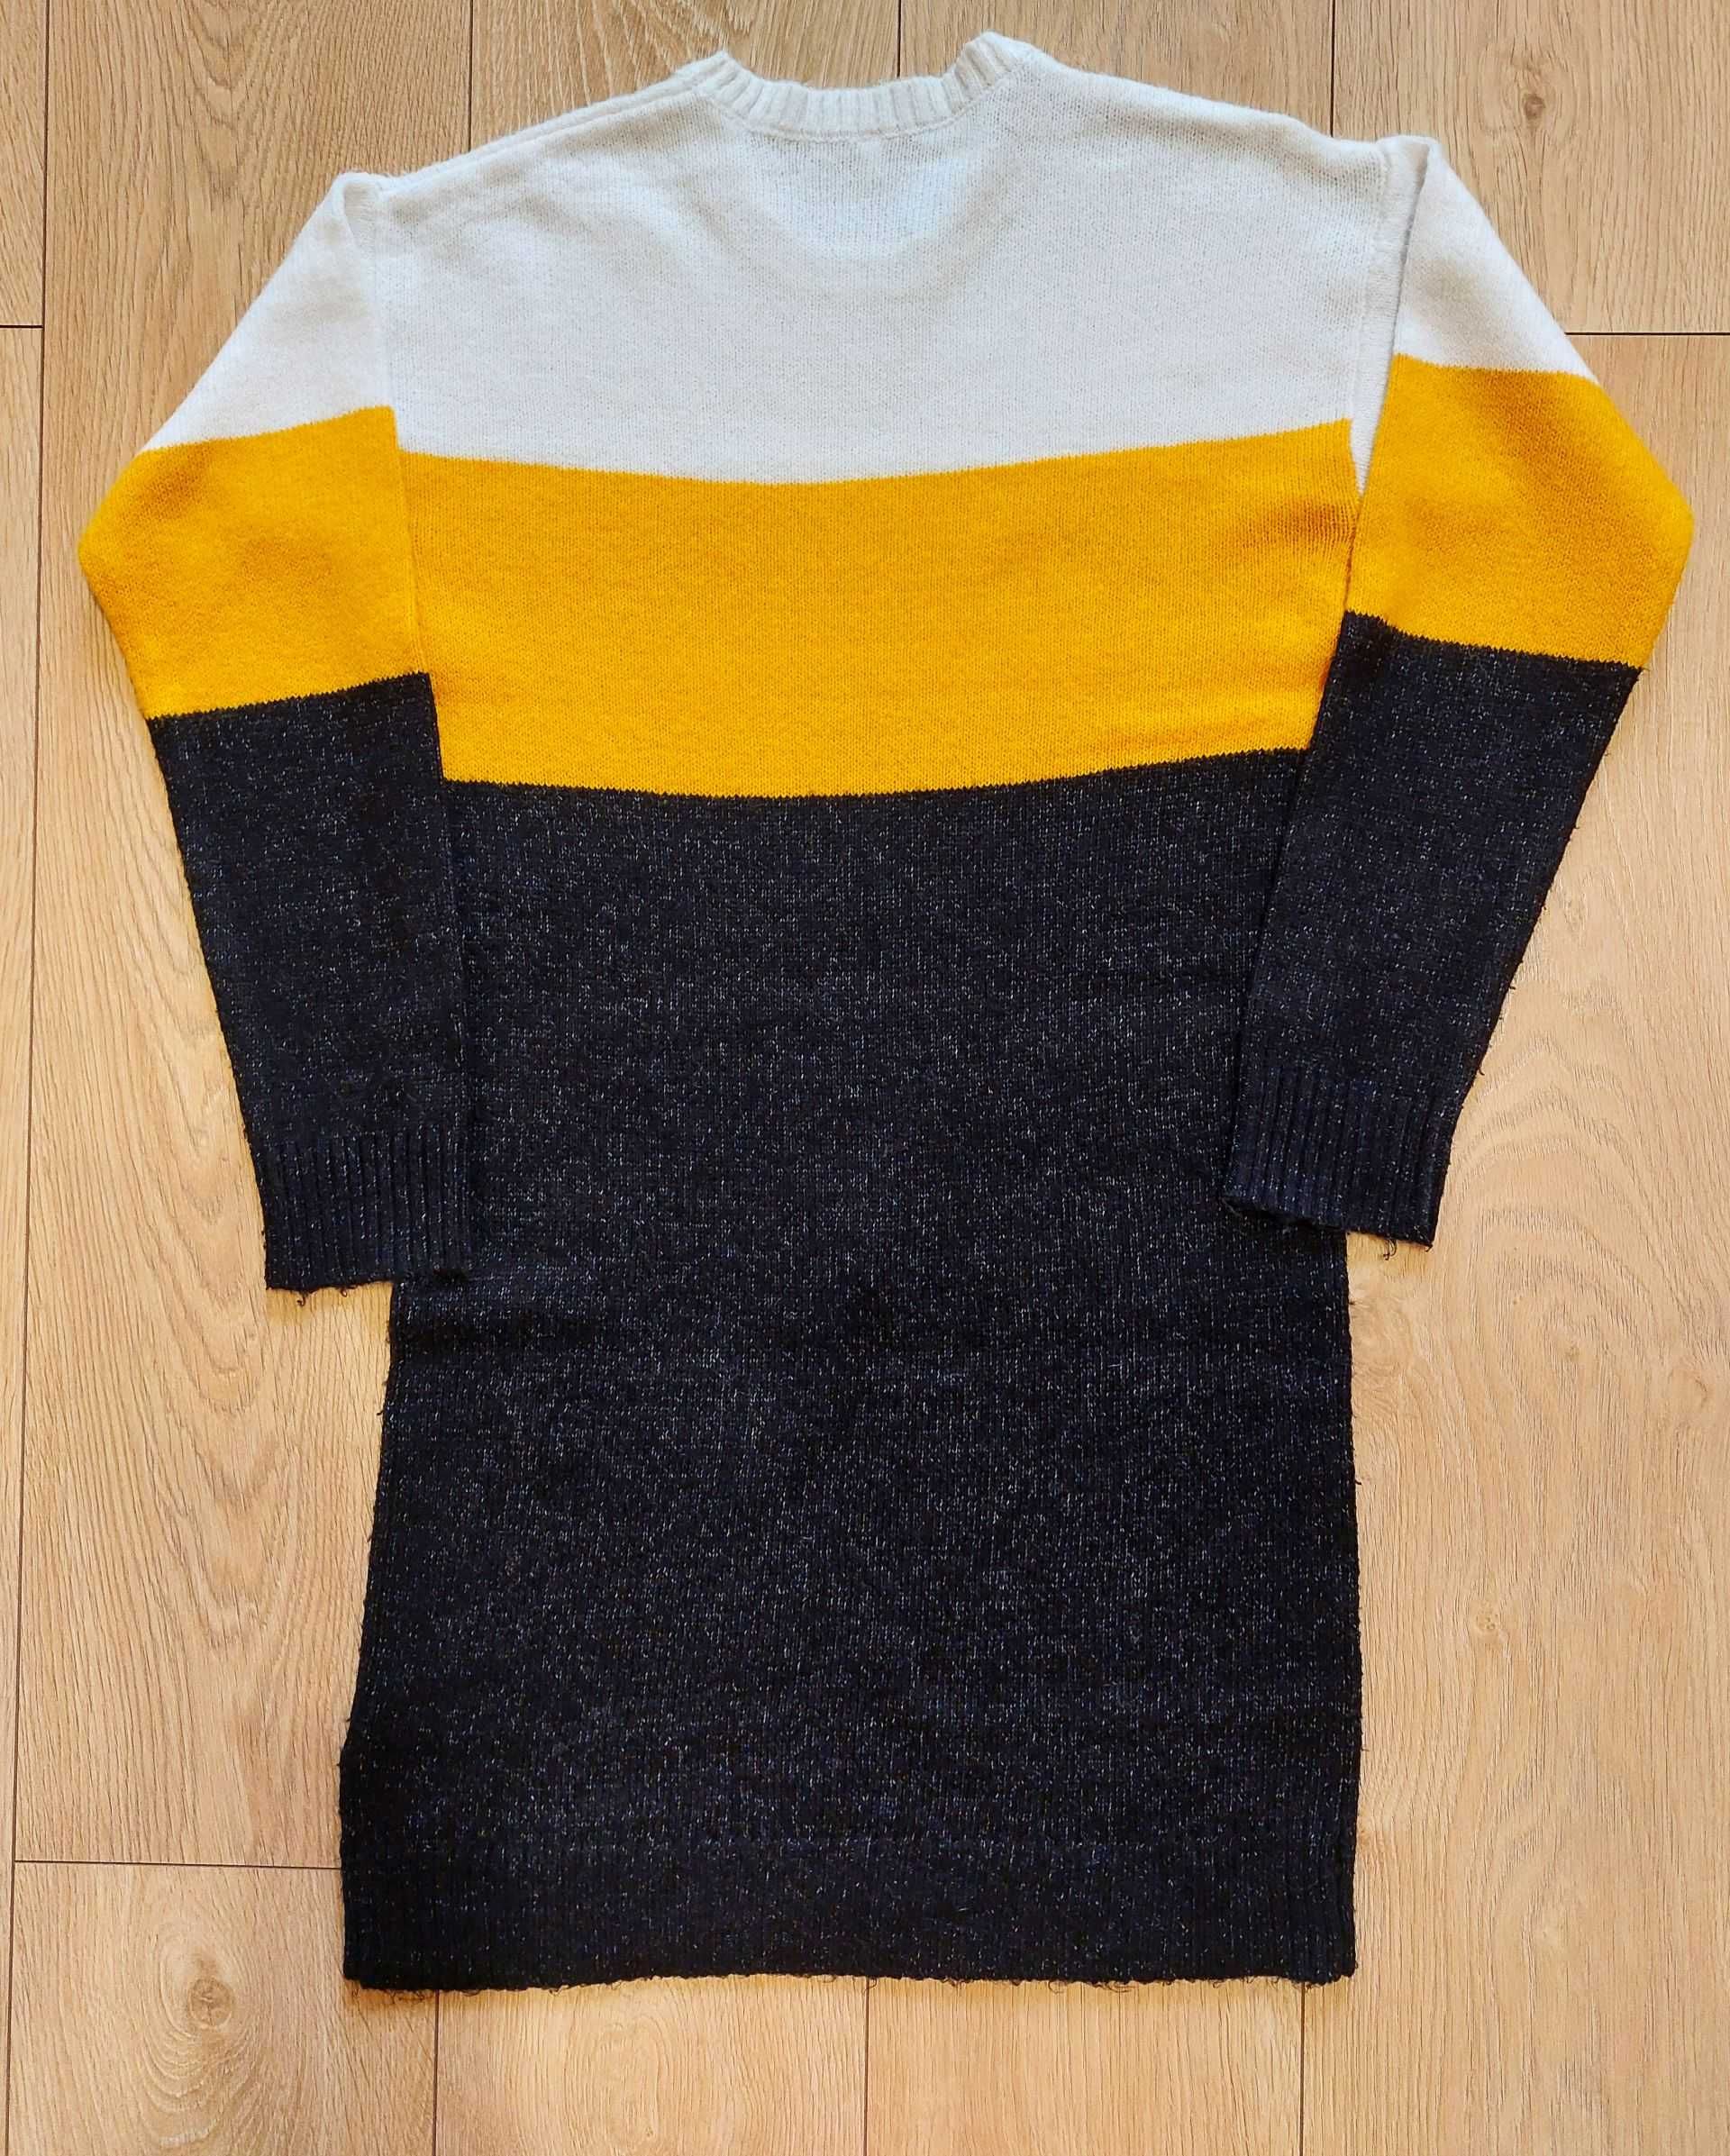 Dziewczęcy, długi sweter C&A, rozmiar 158/164 cm. Super jakość!